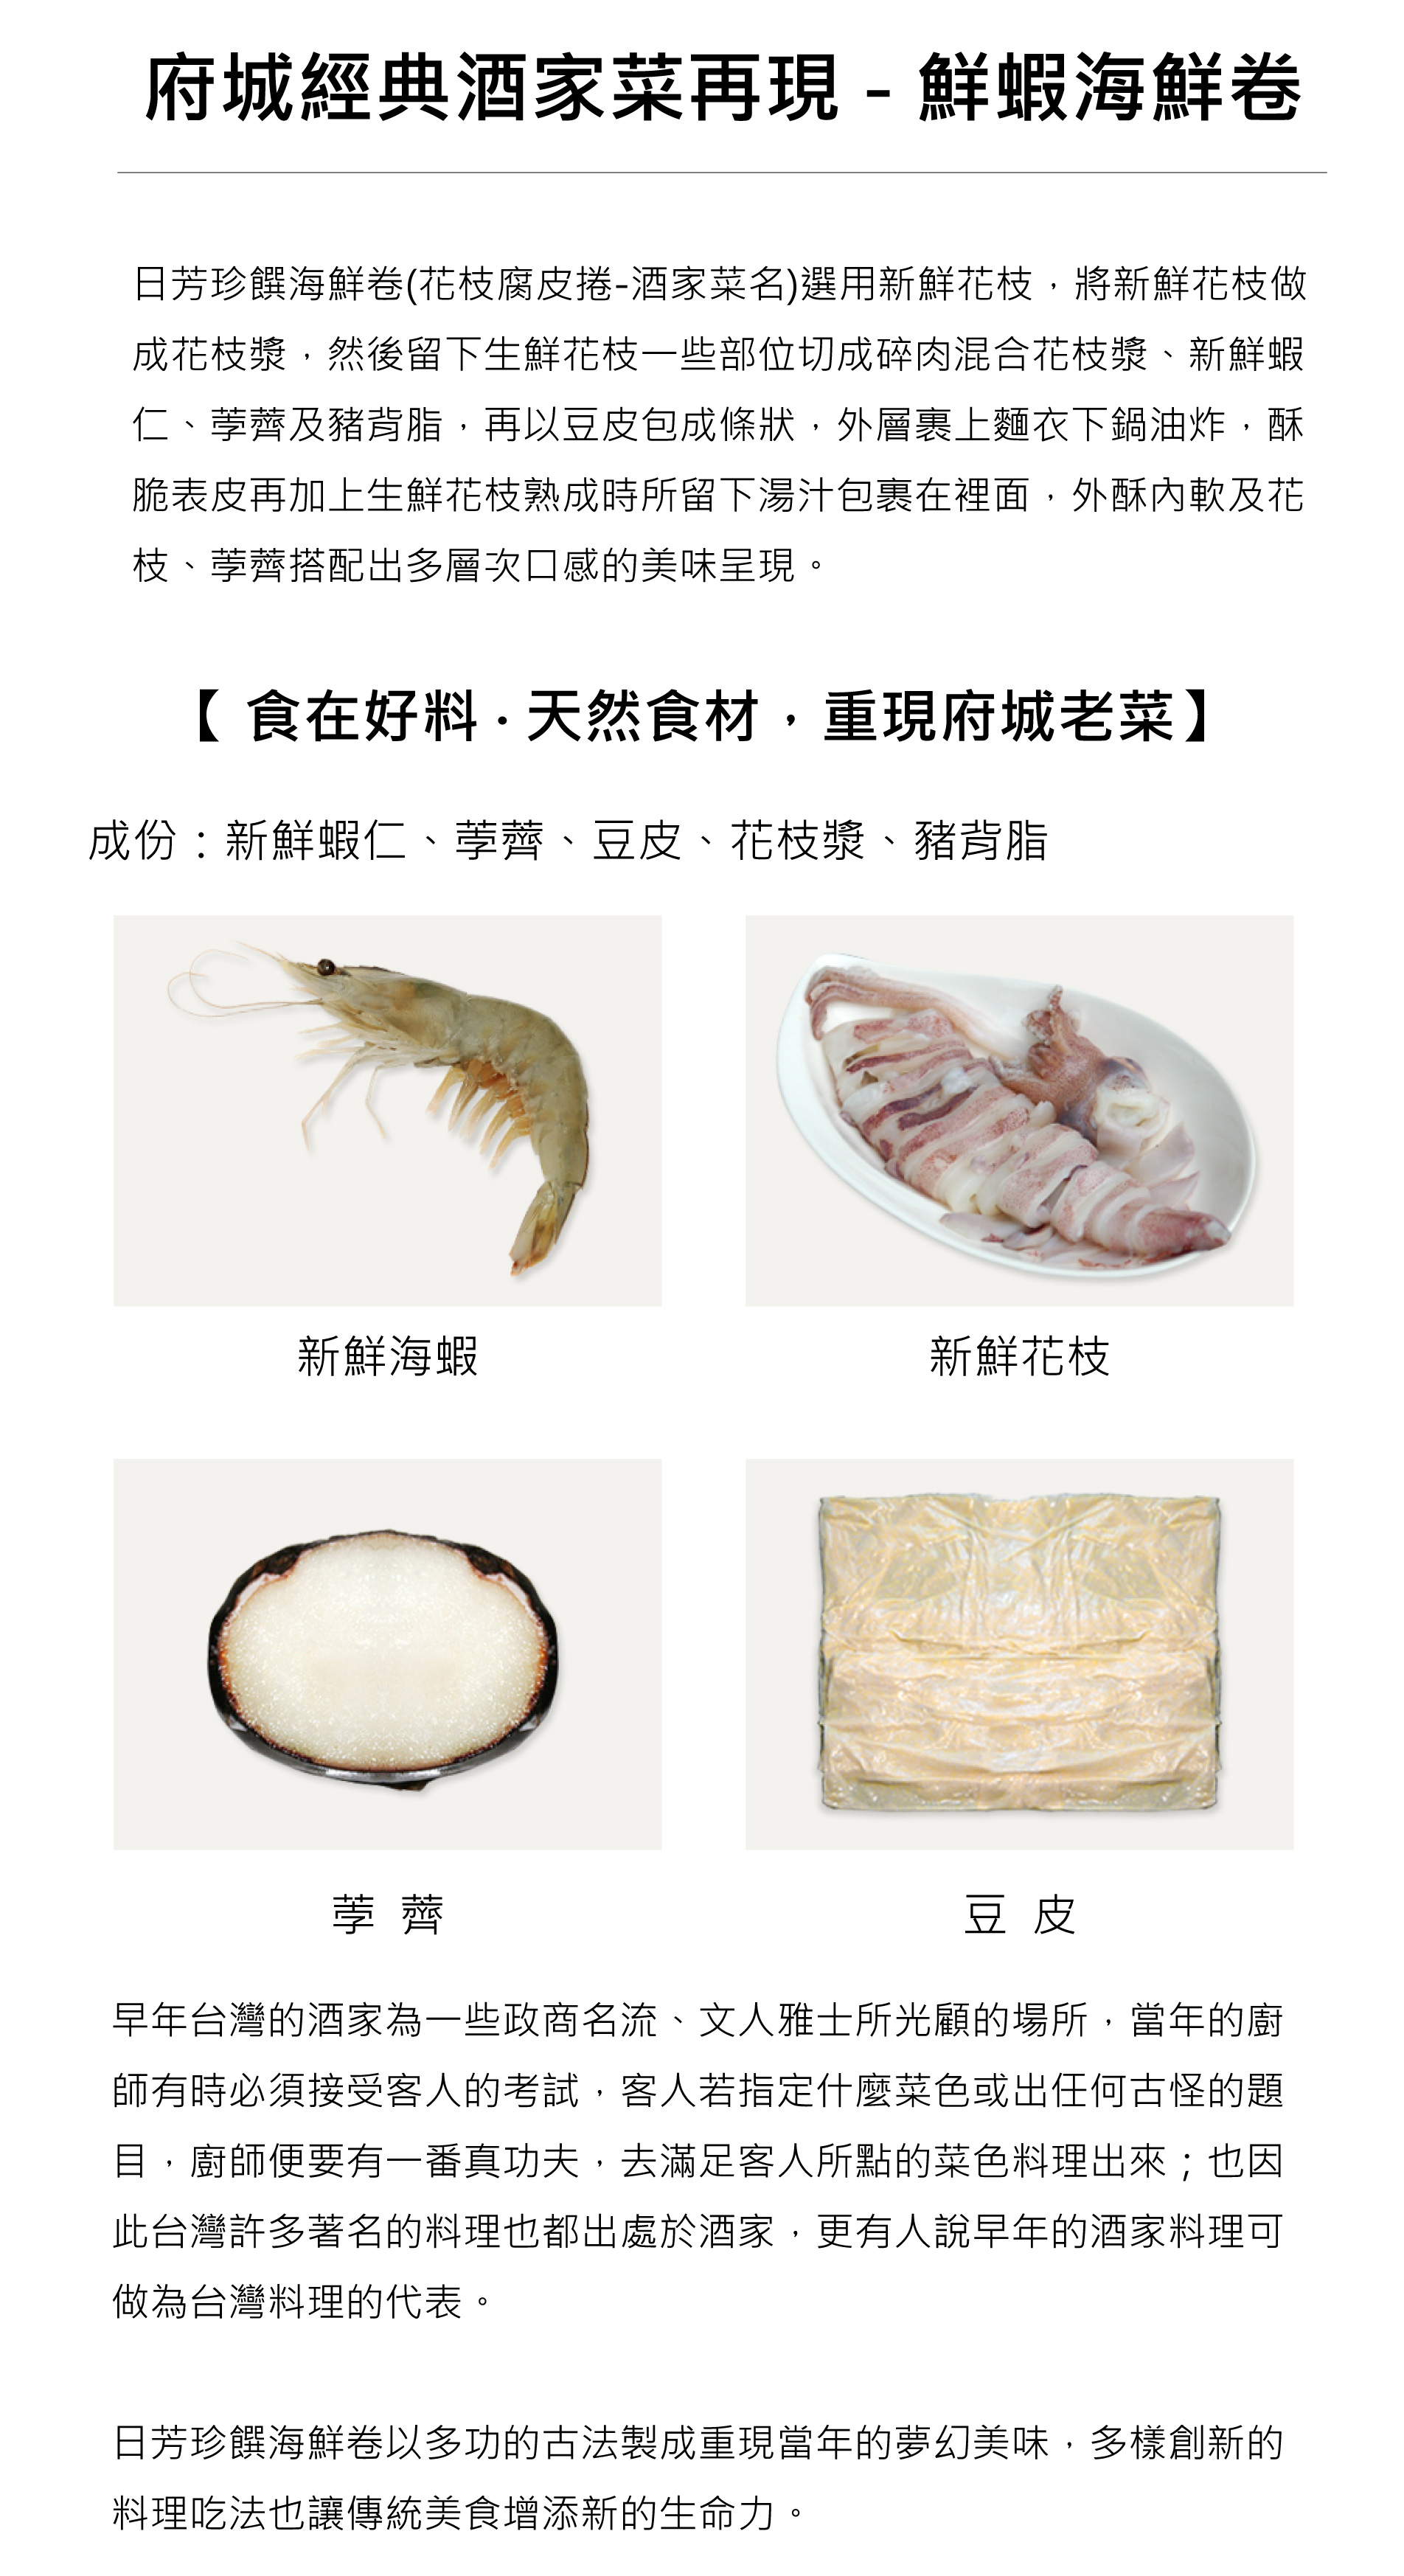 鮮蝦海鮮卷 - 經典台菜(酒家菜)